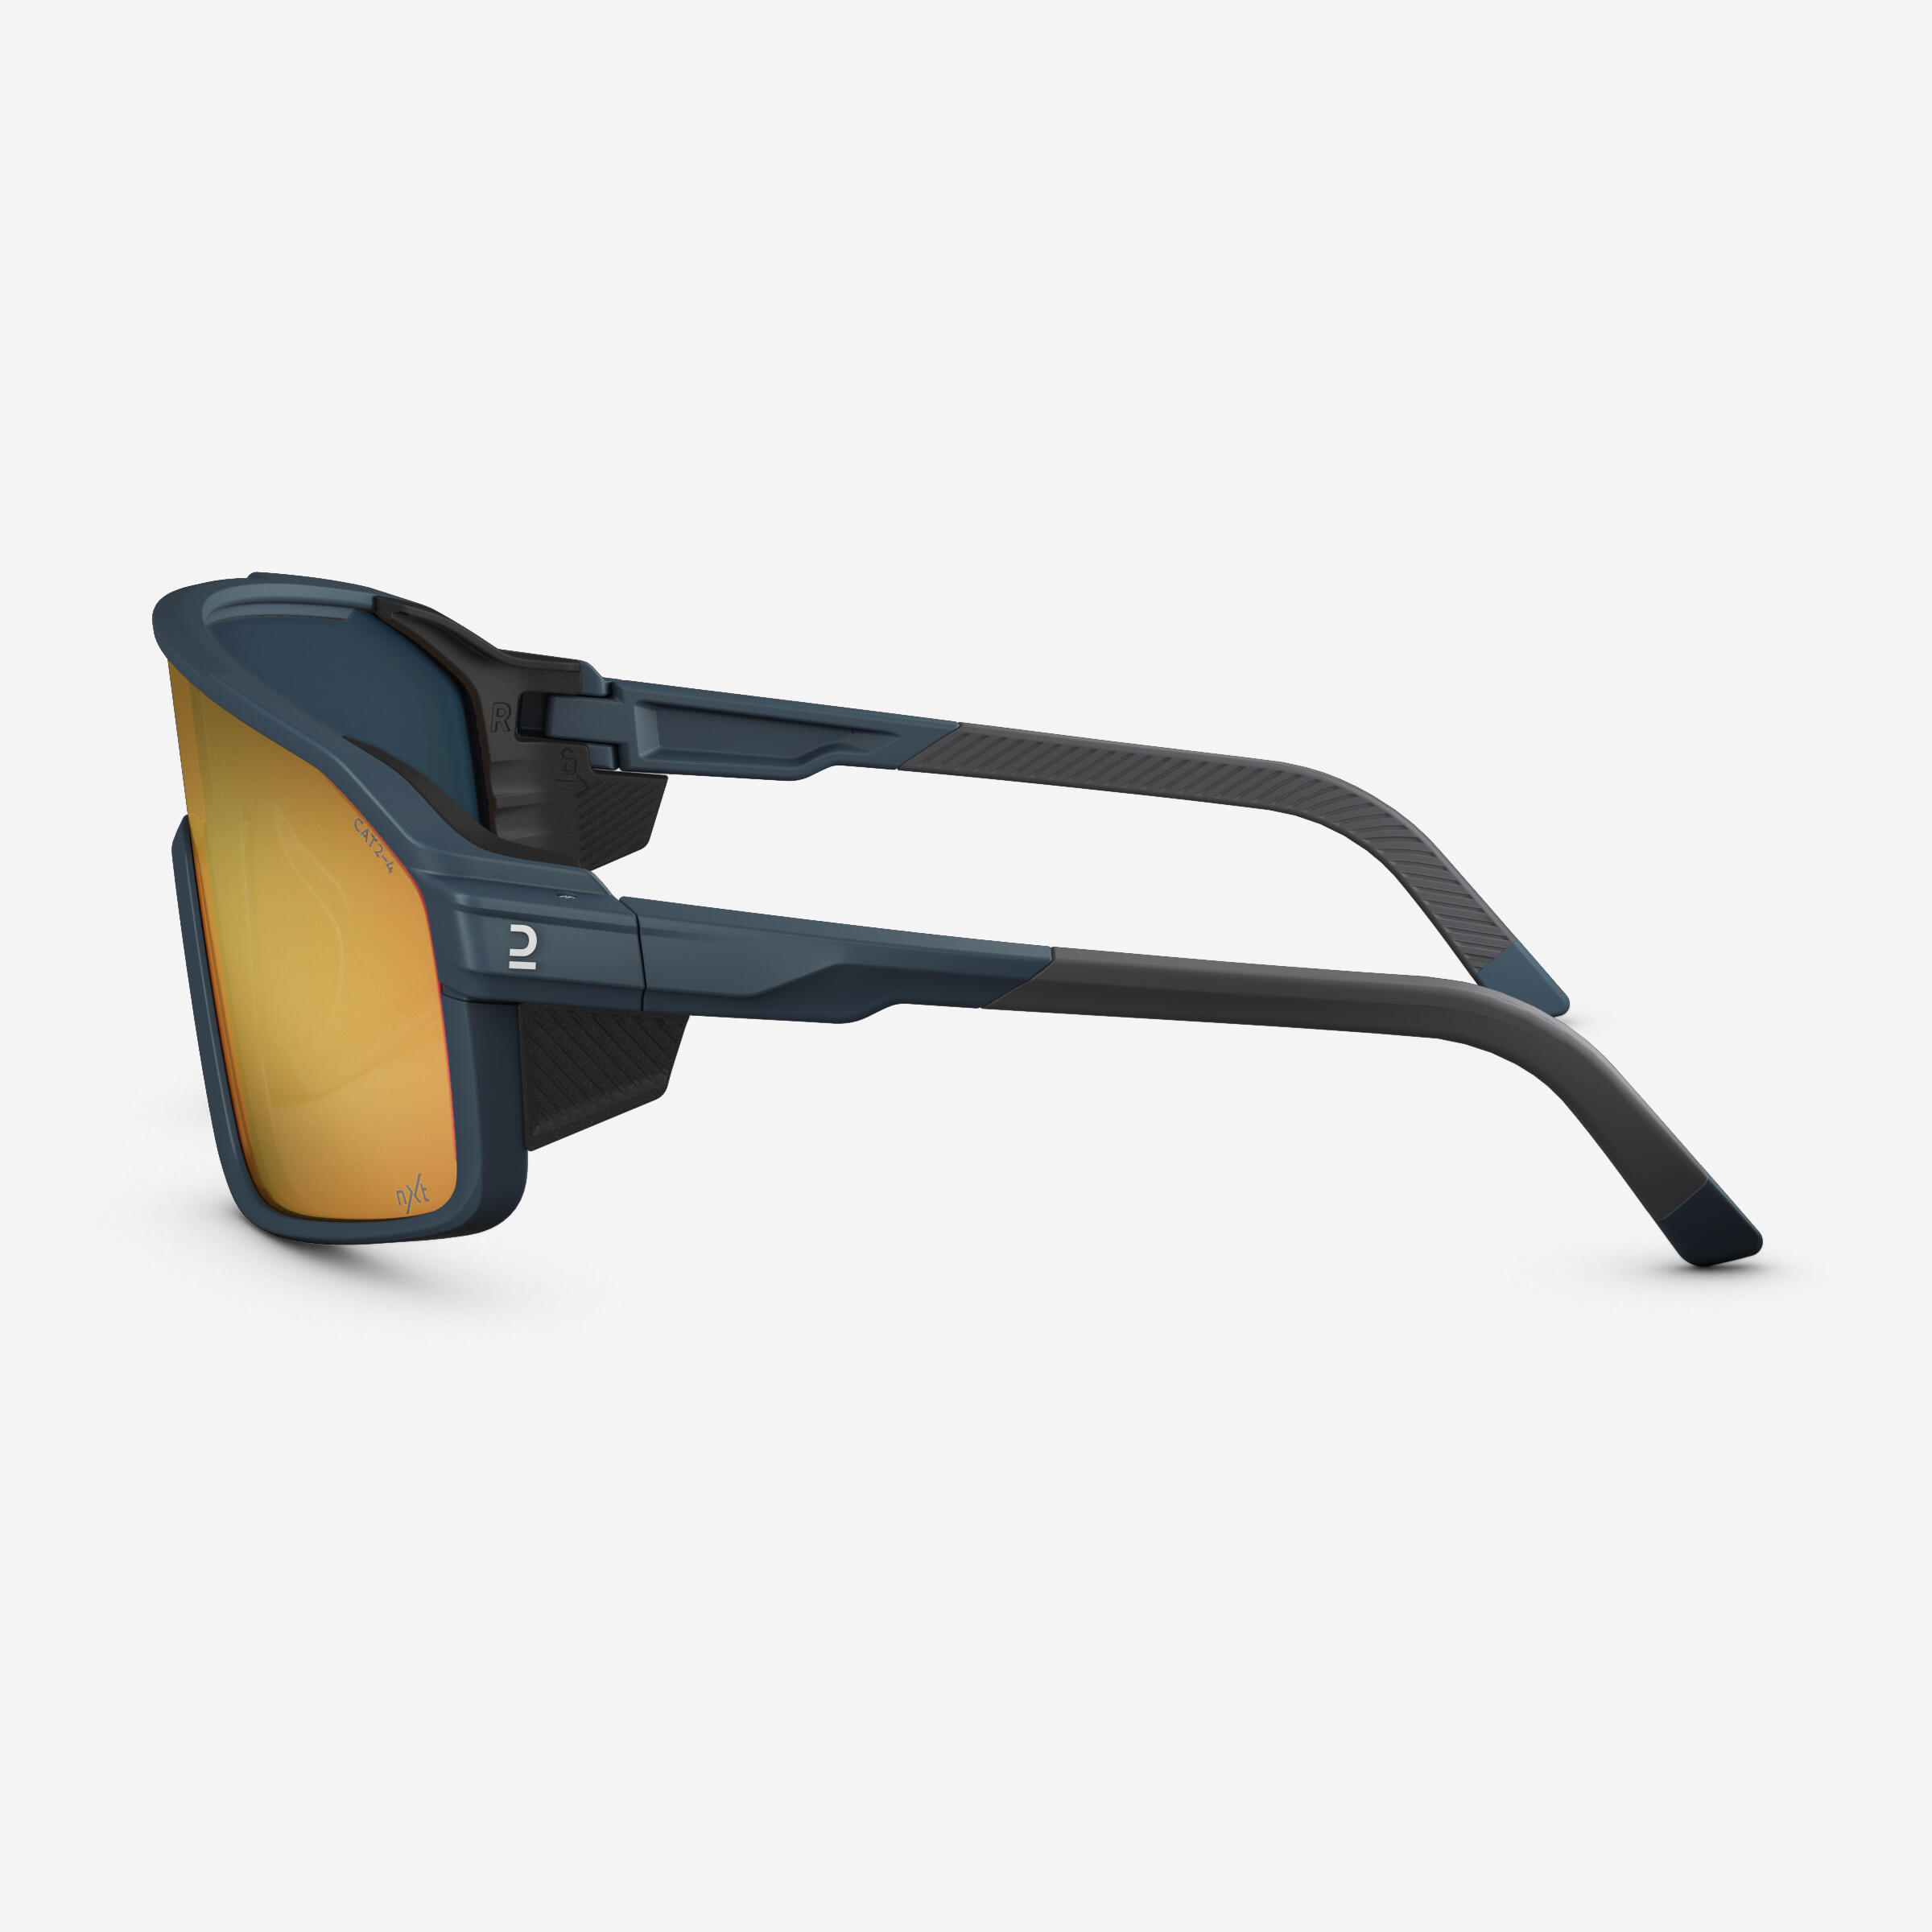 Sunglasses MH900 Photochromic (CAT 2 /4) Full Lens - Volcano Grey 7/9